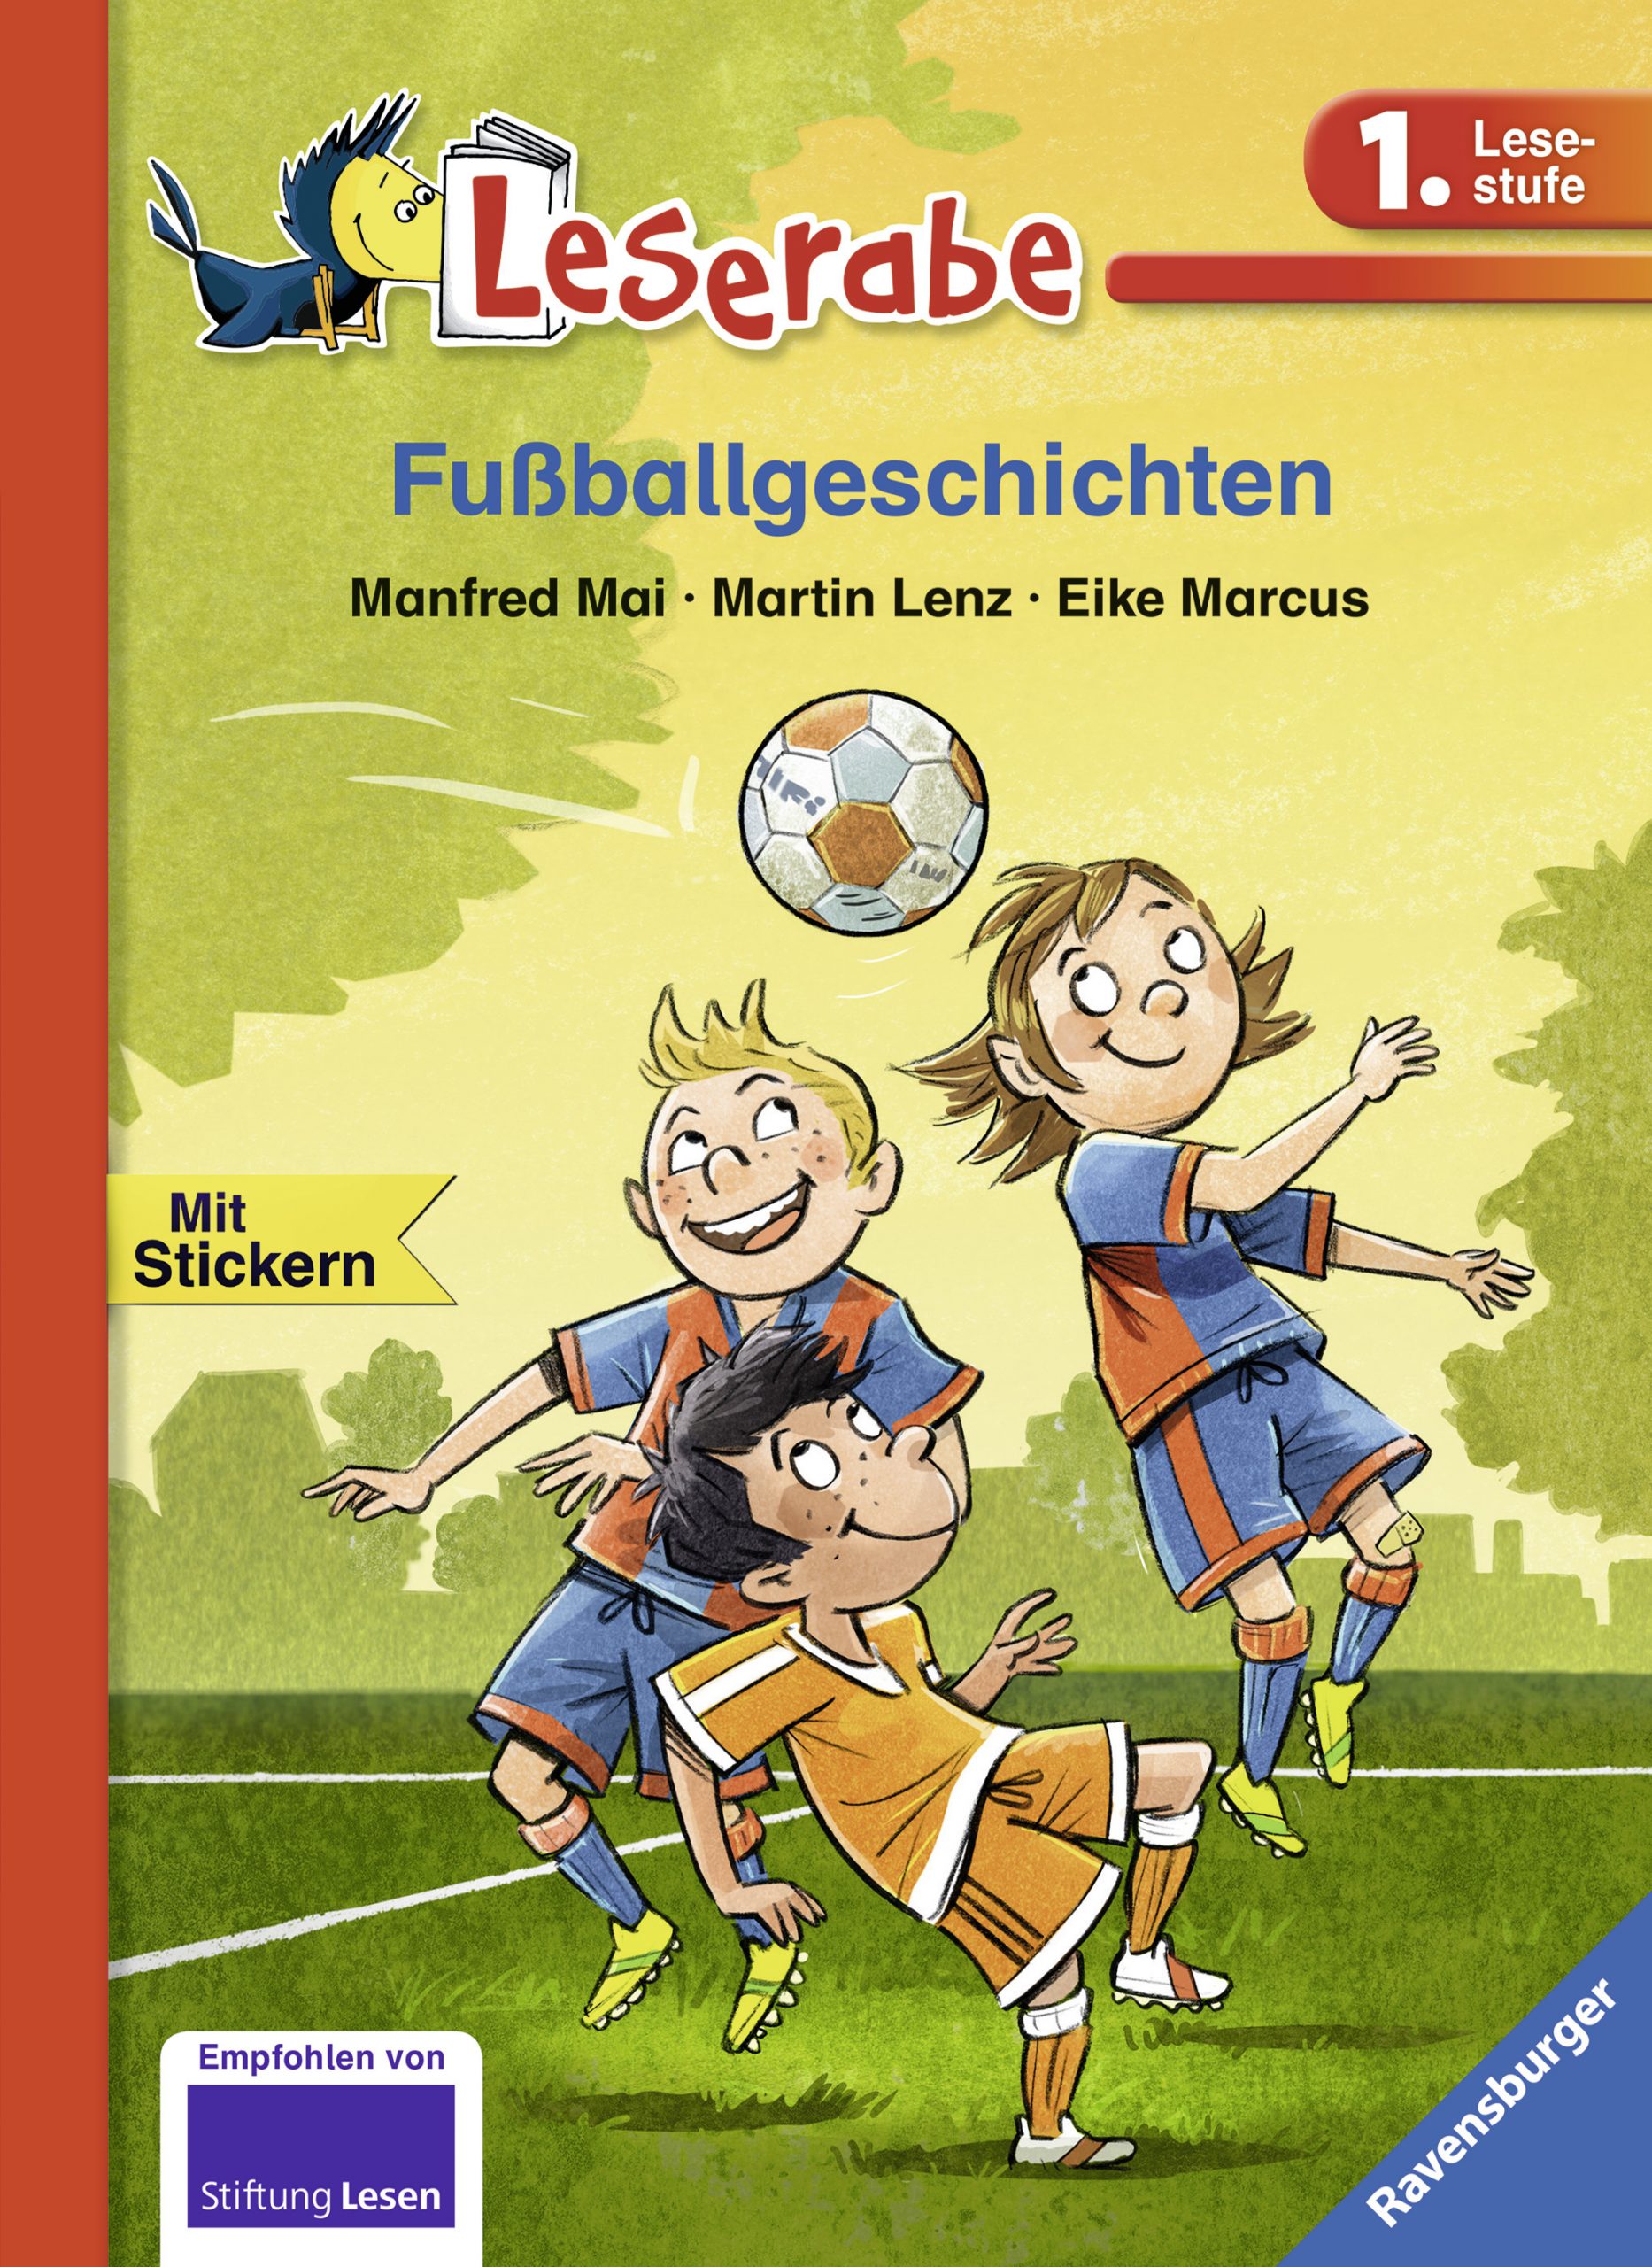 Fußballgeschichten bestimmt für Wieso Sind Bilderbücher Wichtig Für Kinder